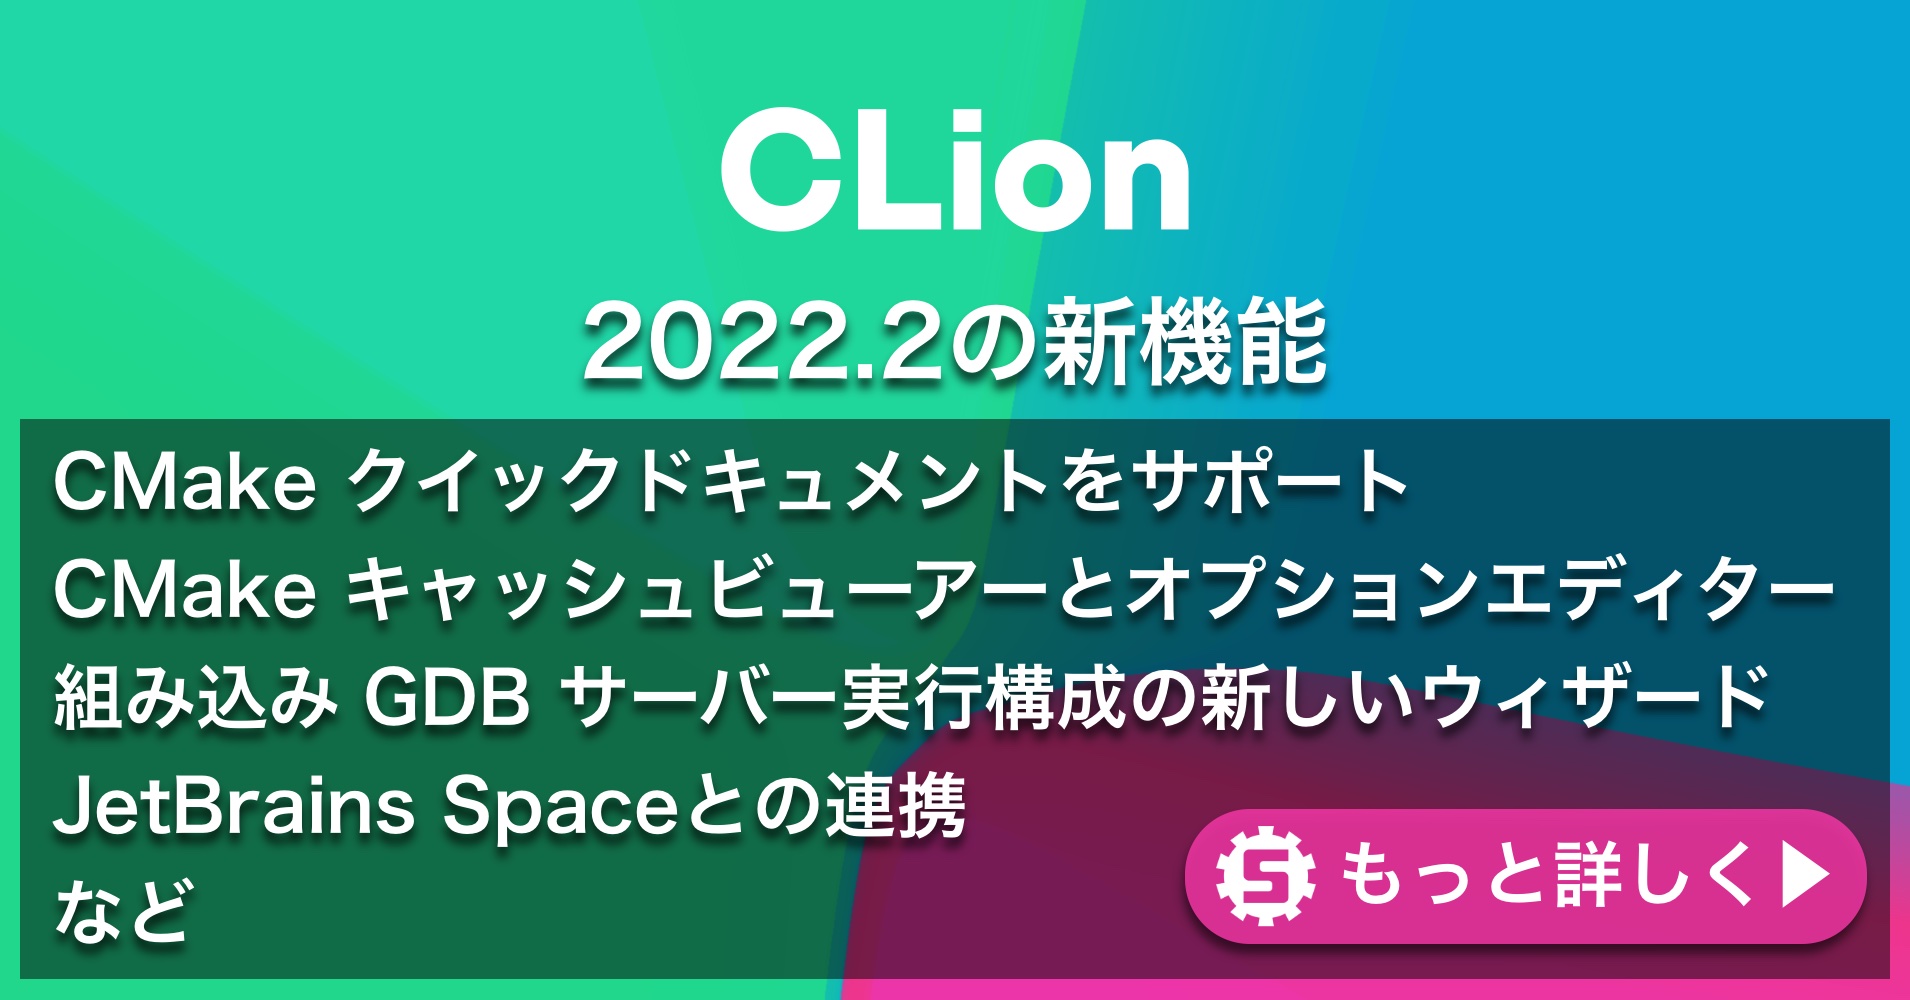 CLion2022.2の新機能